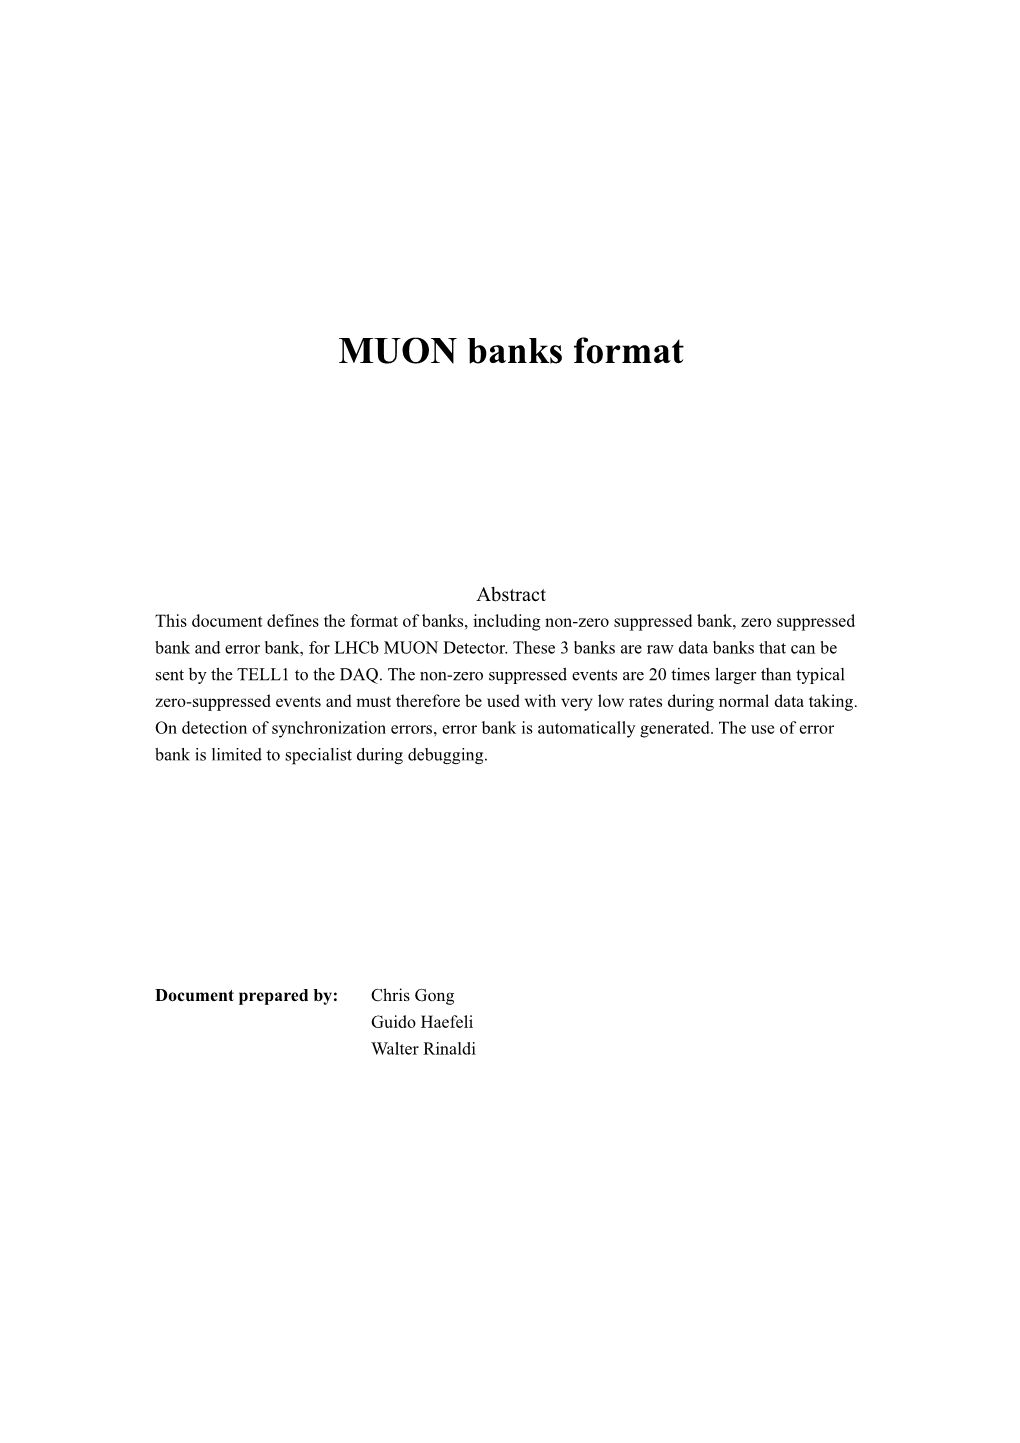 MUON Banks Format